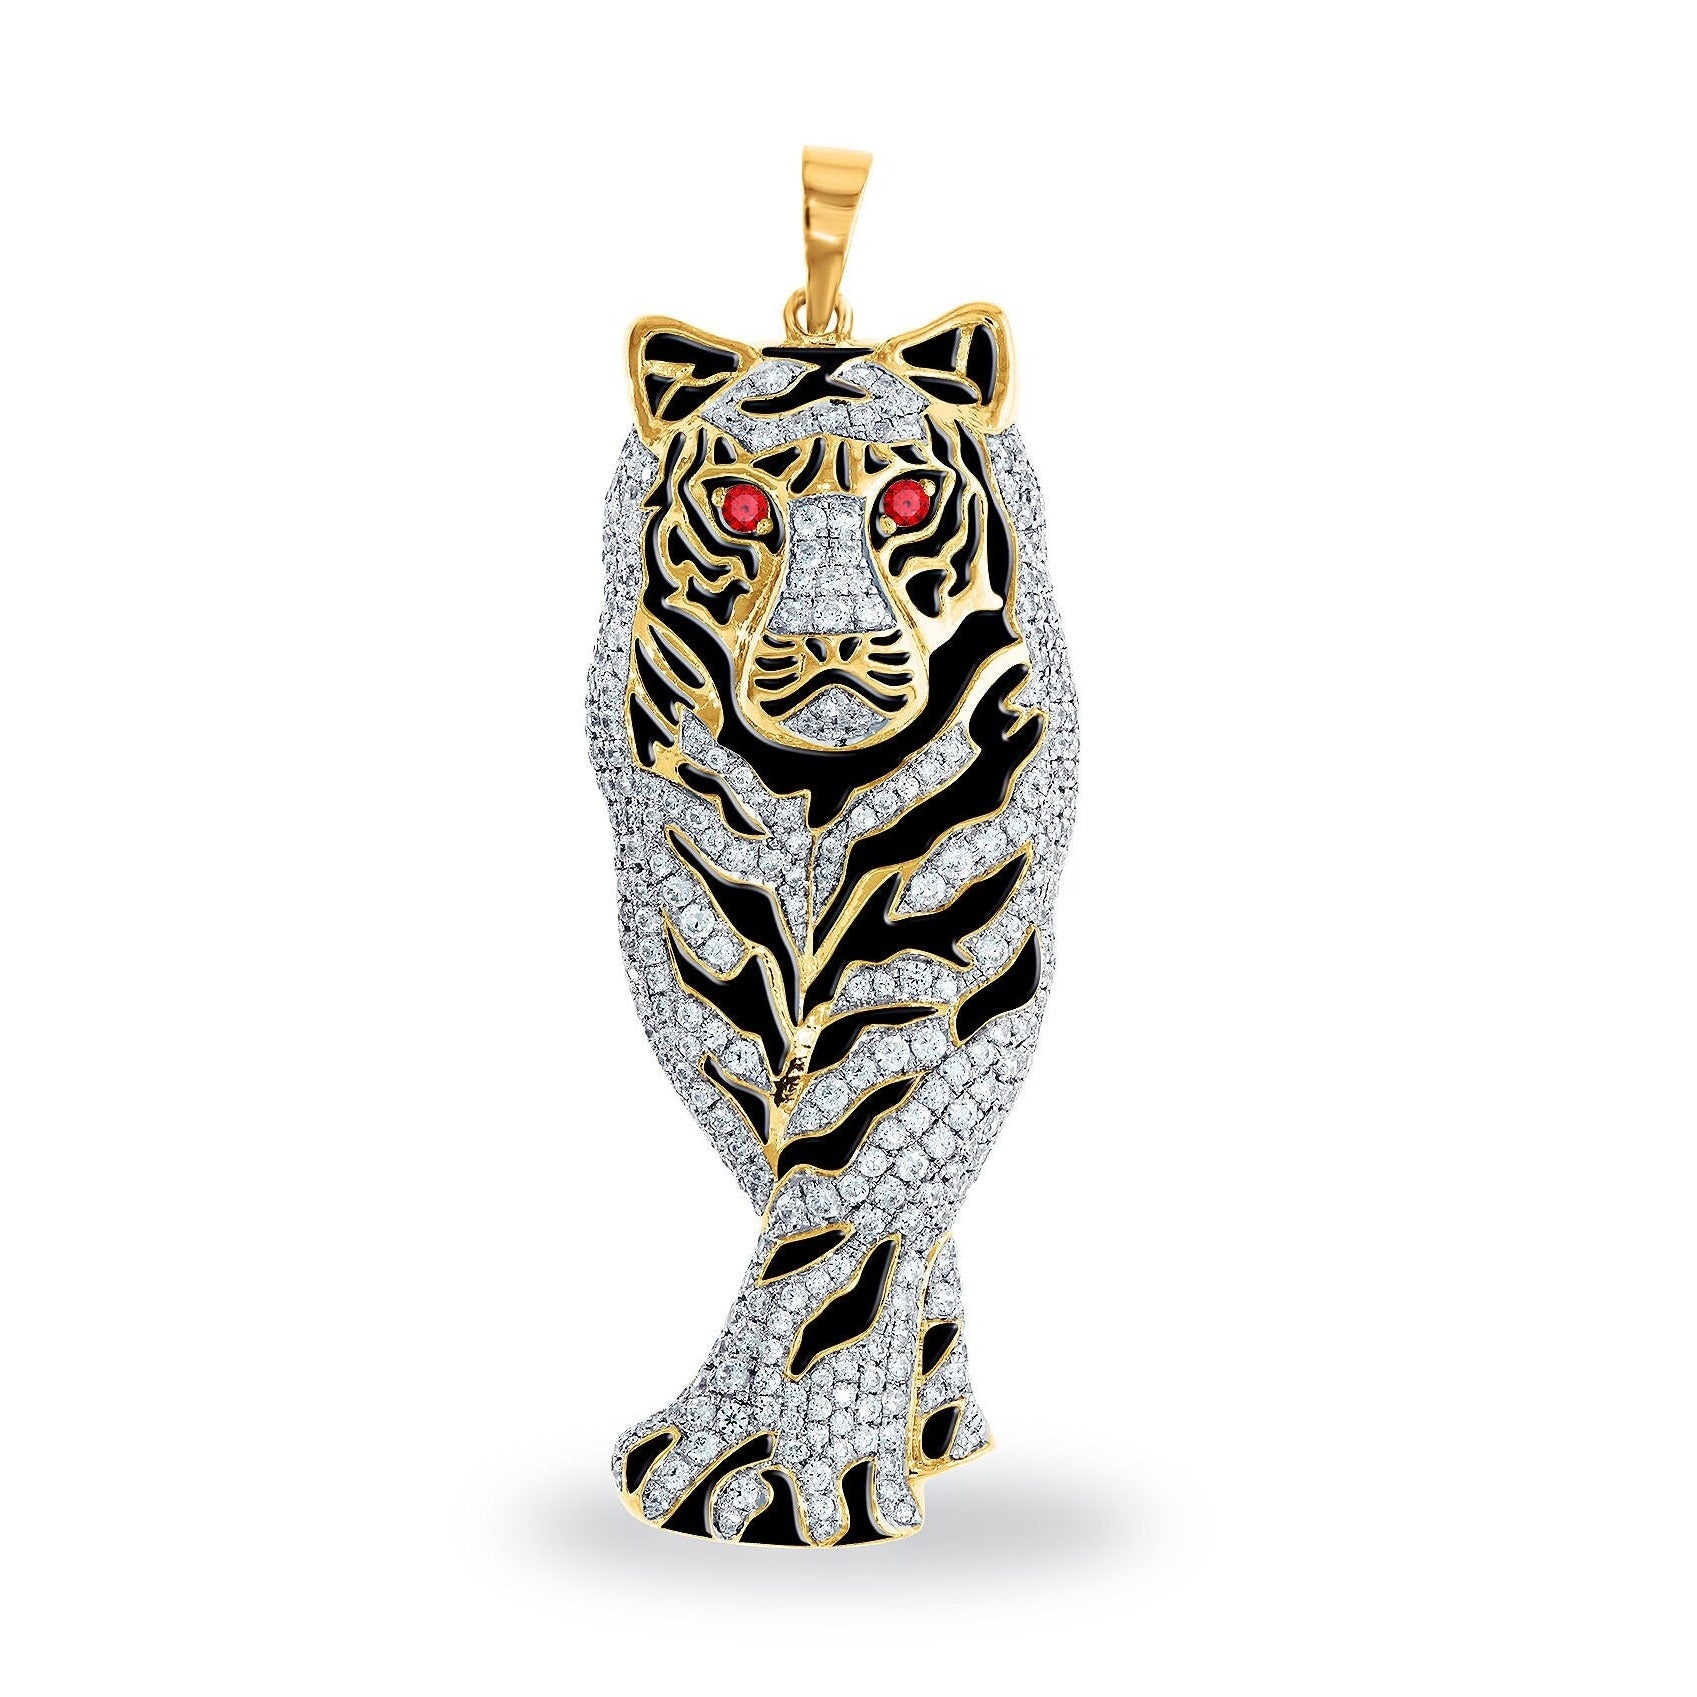 Pendentif tigre diamant, pendentif tigre diamant jaune, pendentif tigre or blanc, pendentif tigre, breloque animal diamant, bijoux animaux diamant